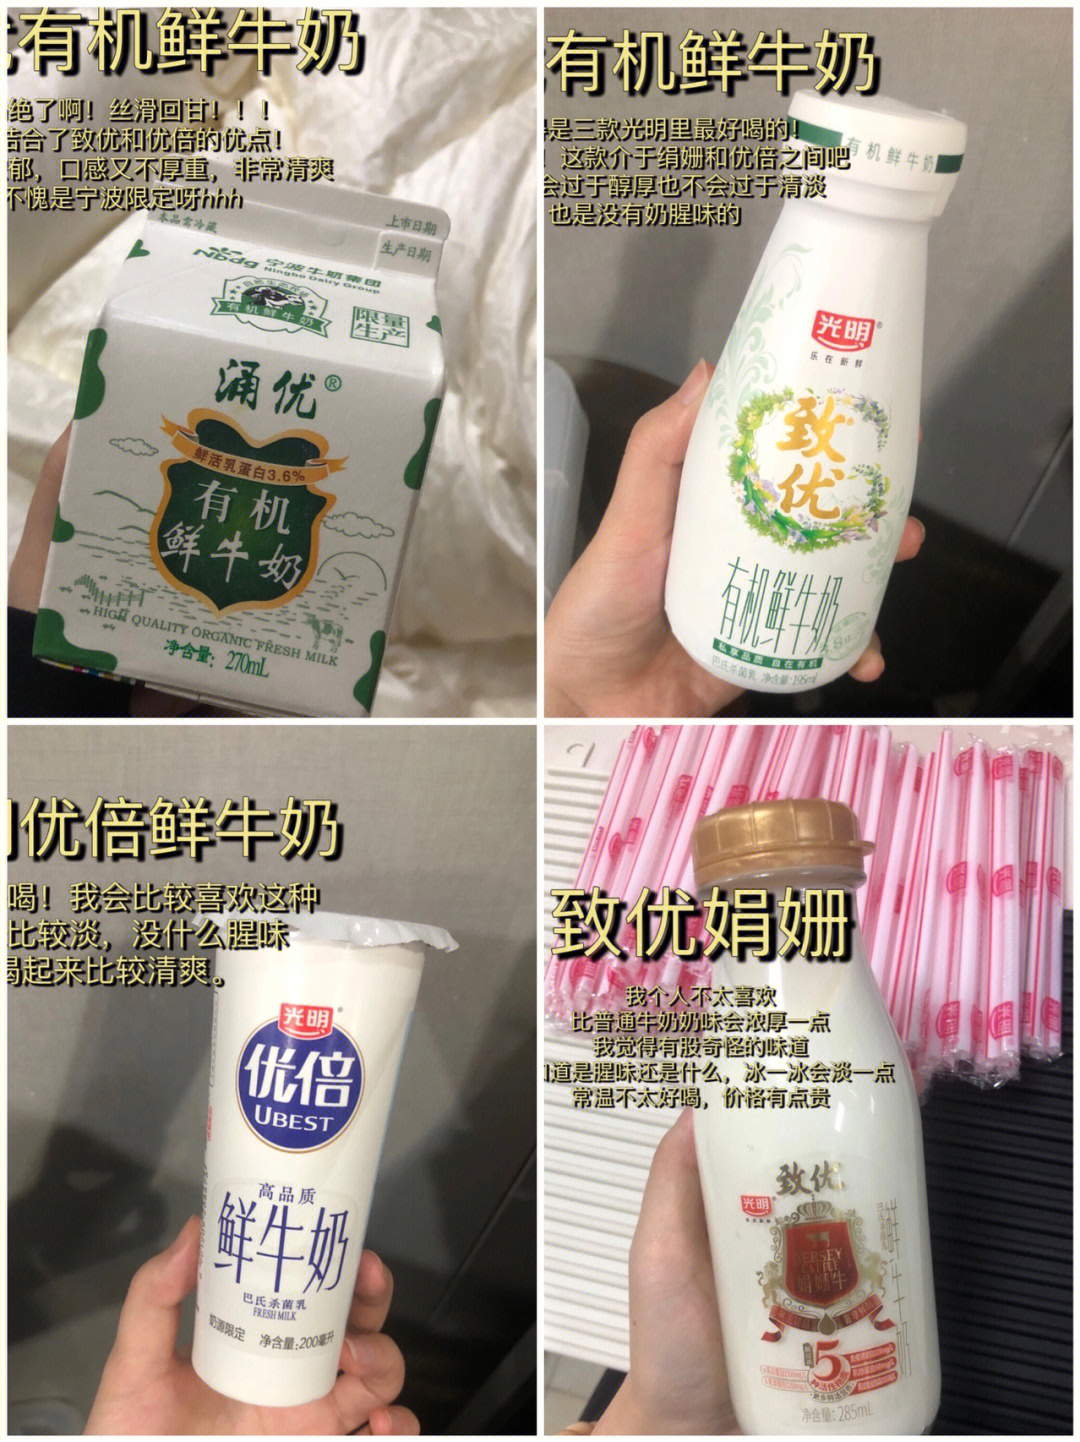 宁波涌优牛奶订奶热线图片